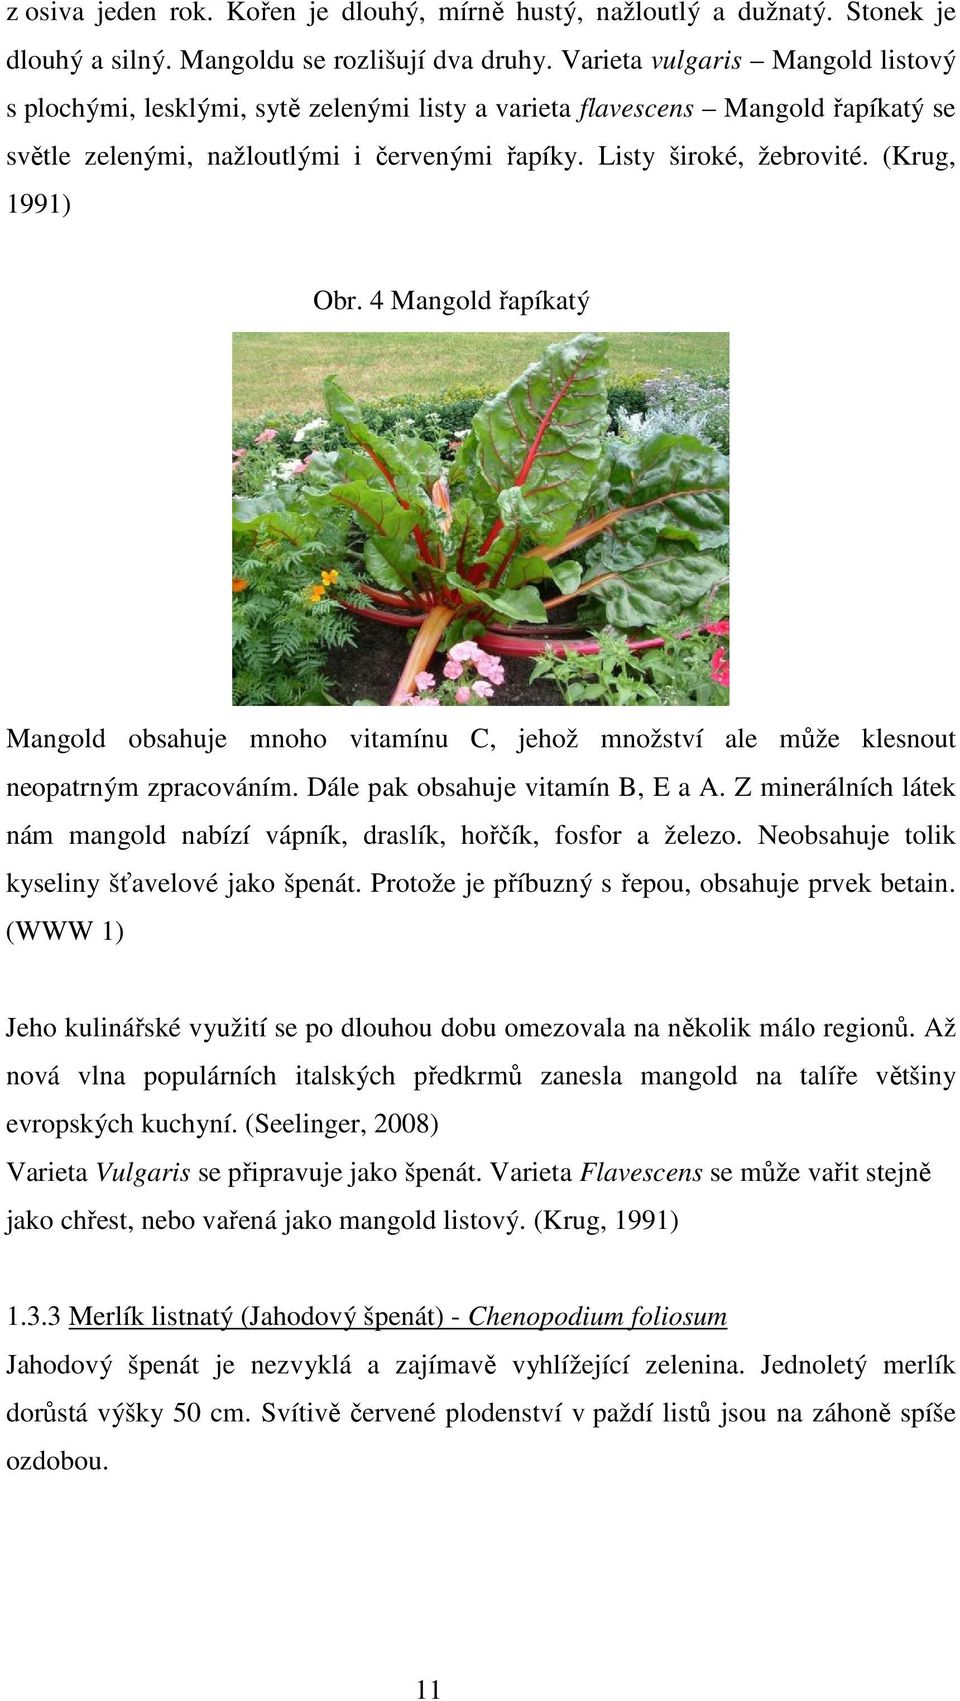 (Krug, 1991) Obr. 4 Mangold řapíkatý Mangold obsahuje mnoho vitamínu C, jehož množství ale může klesnout neopatrným zpracováním. Dále pak obsahuje vitamín B, E a A.